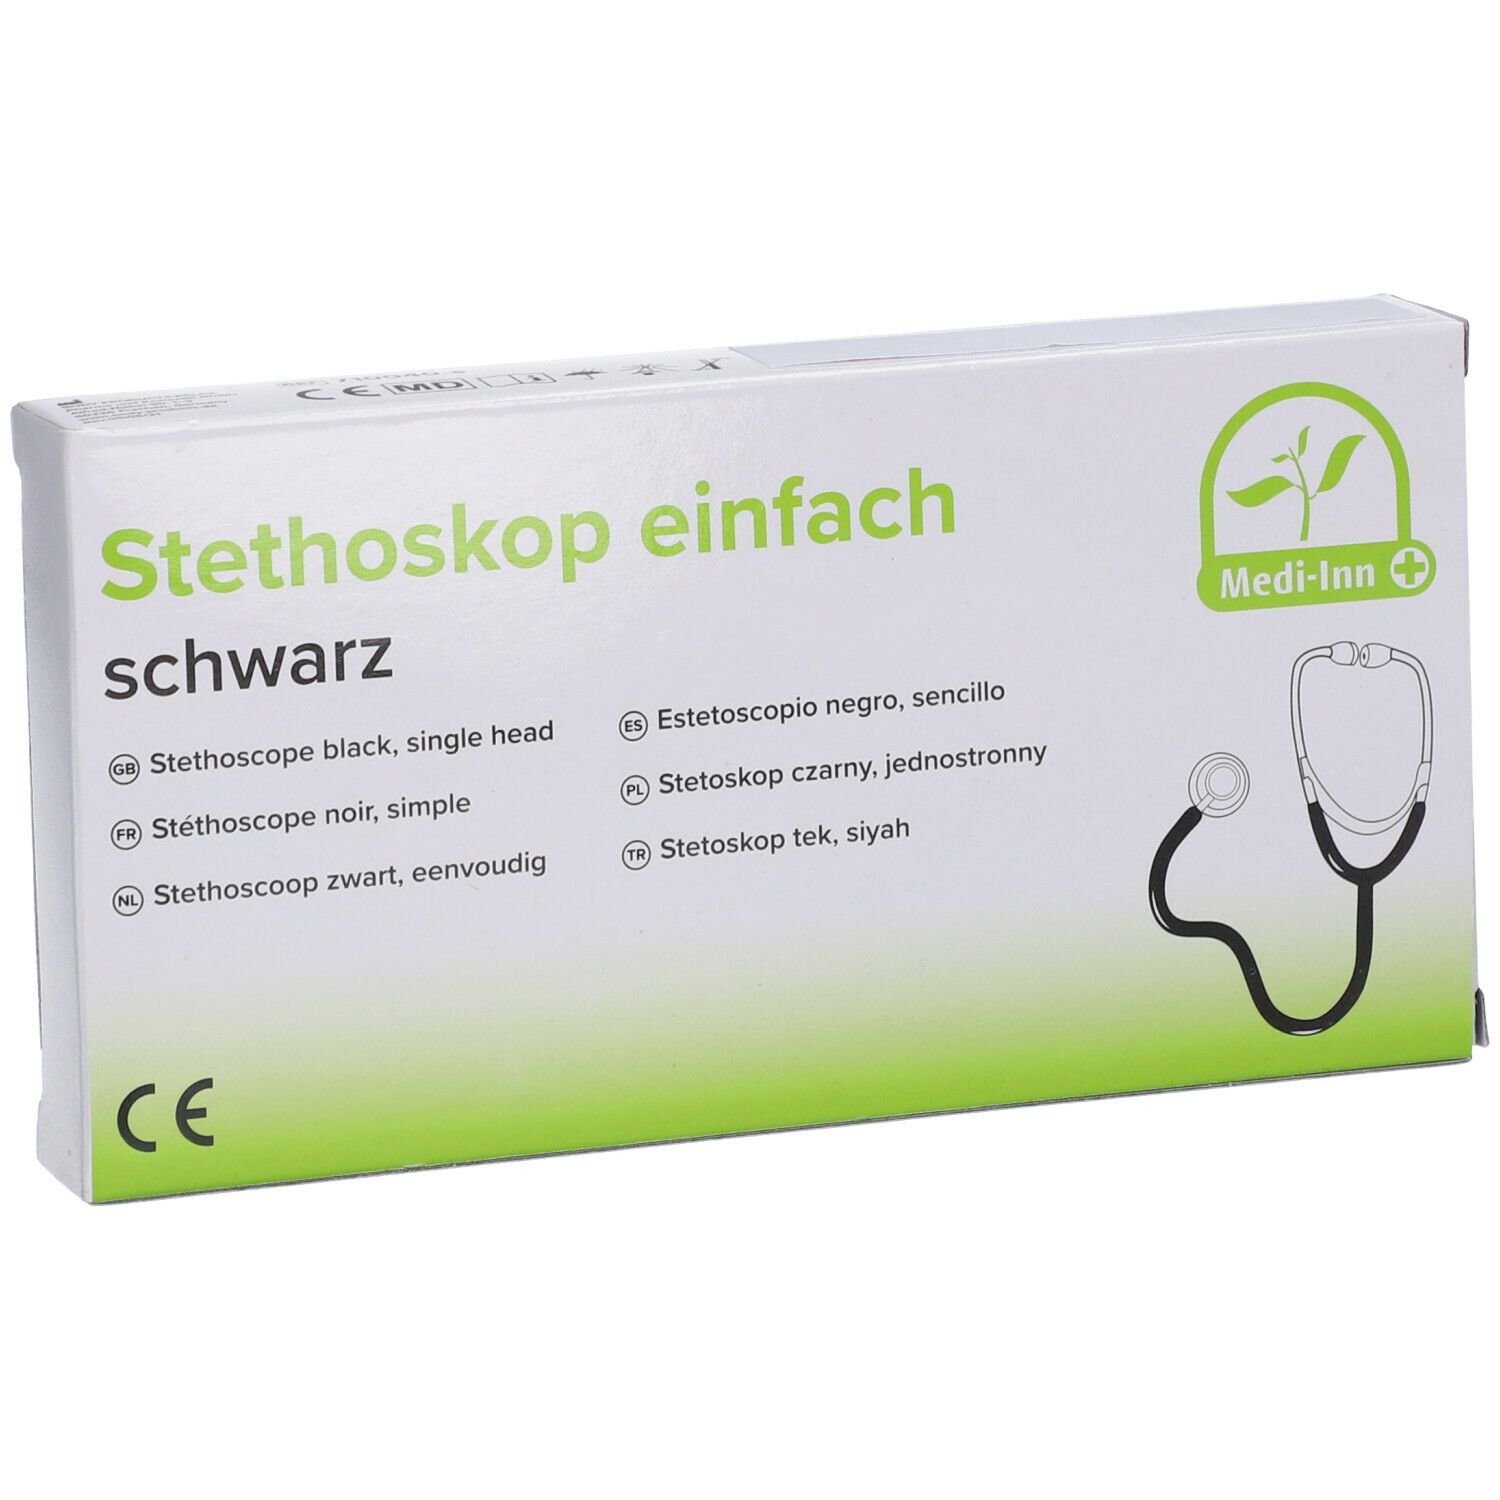 Stethoskop Flachkopf 1 St - SHOP APOTHEKE